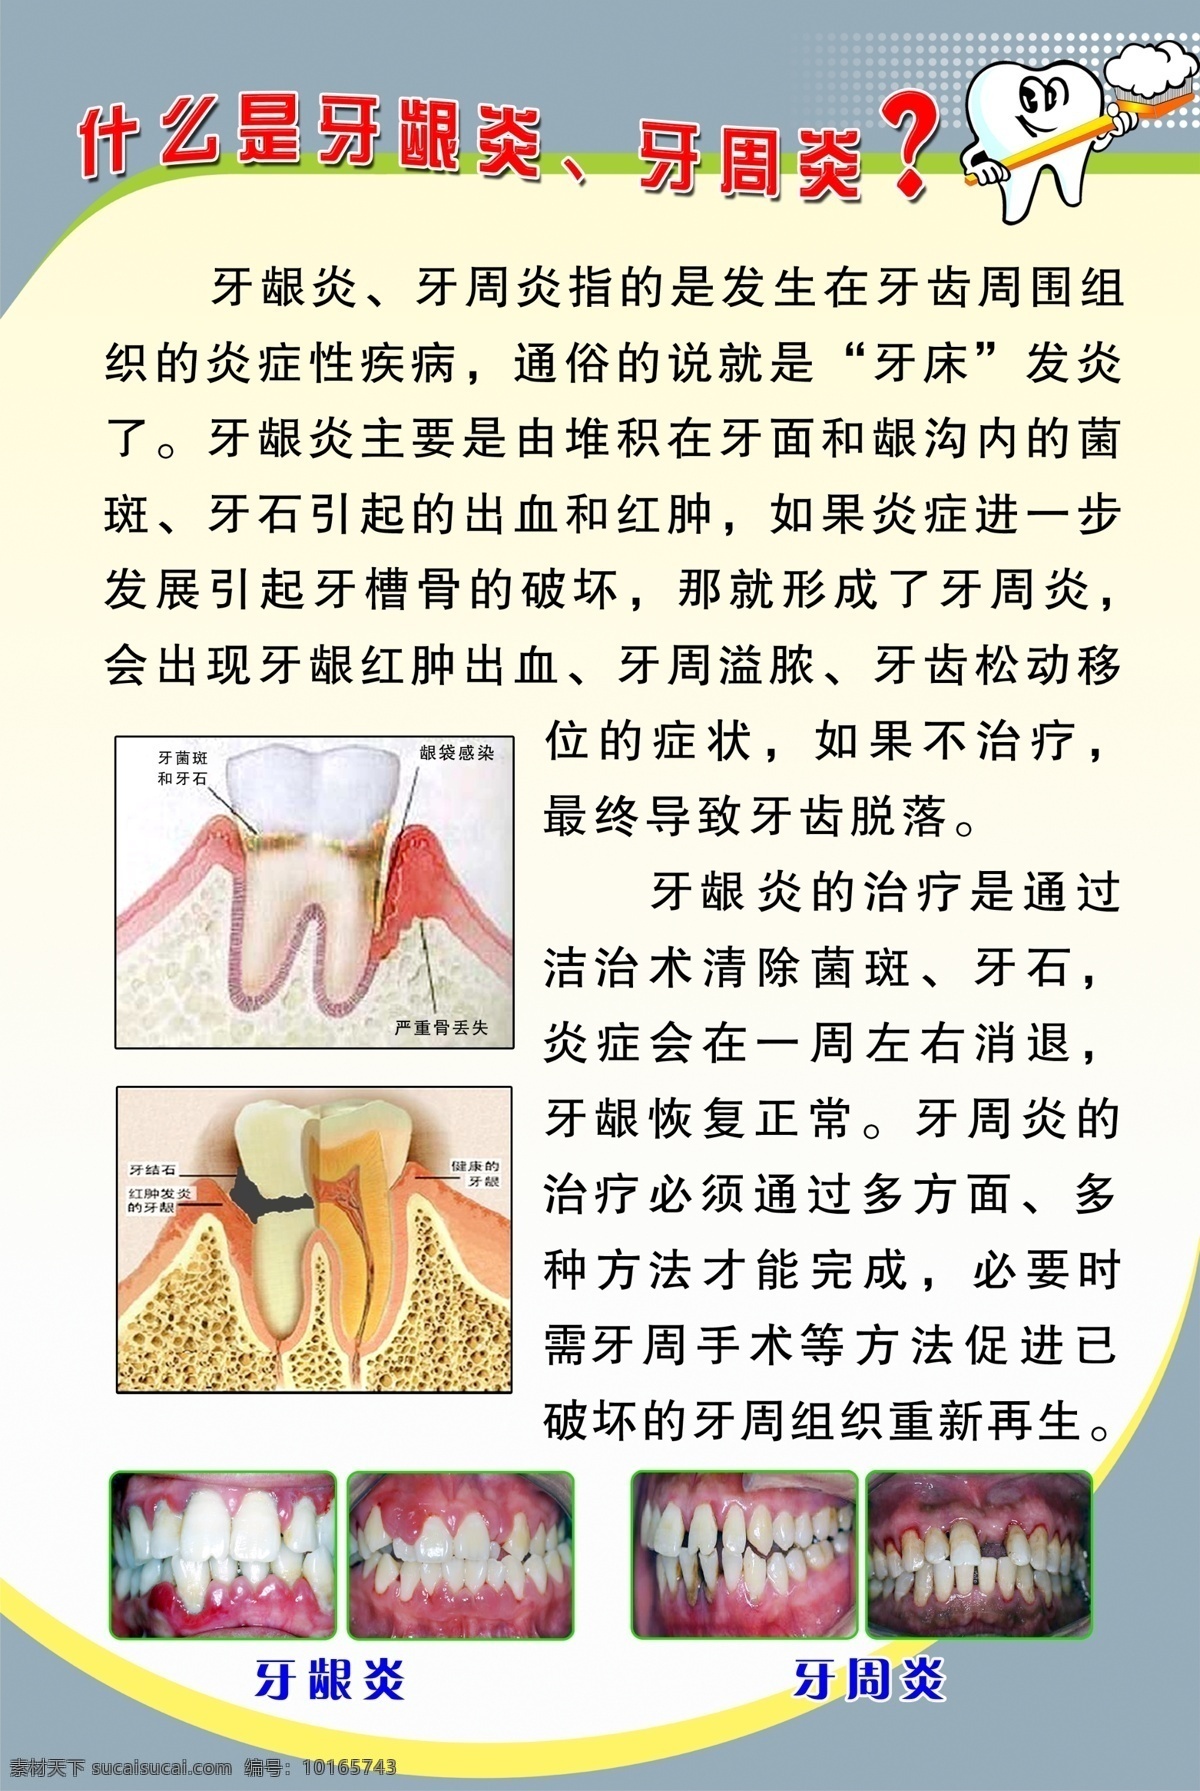 什么是牙龈炎 牙周炎 医院图板 牙龈炎 牙周炎的治疗 牙周炎的症状 广告设计模板 源文件